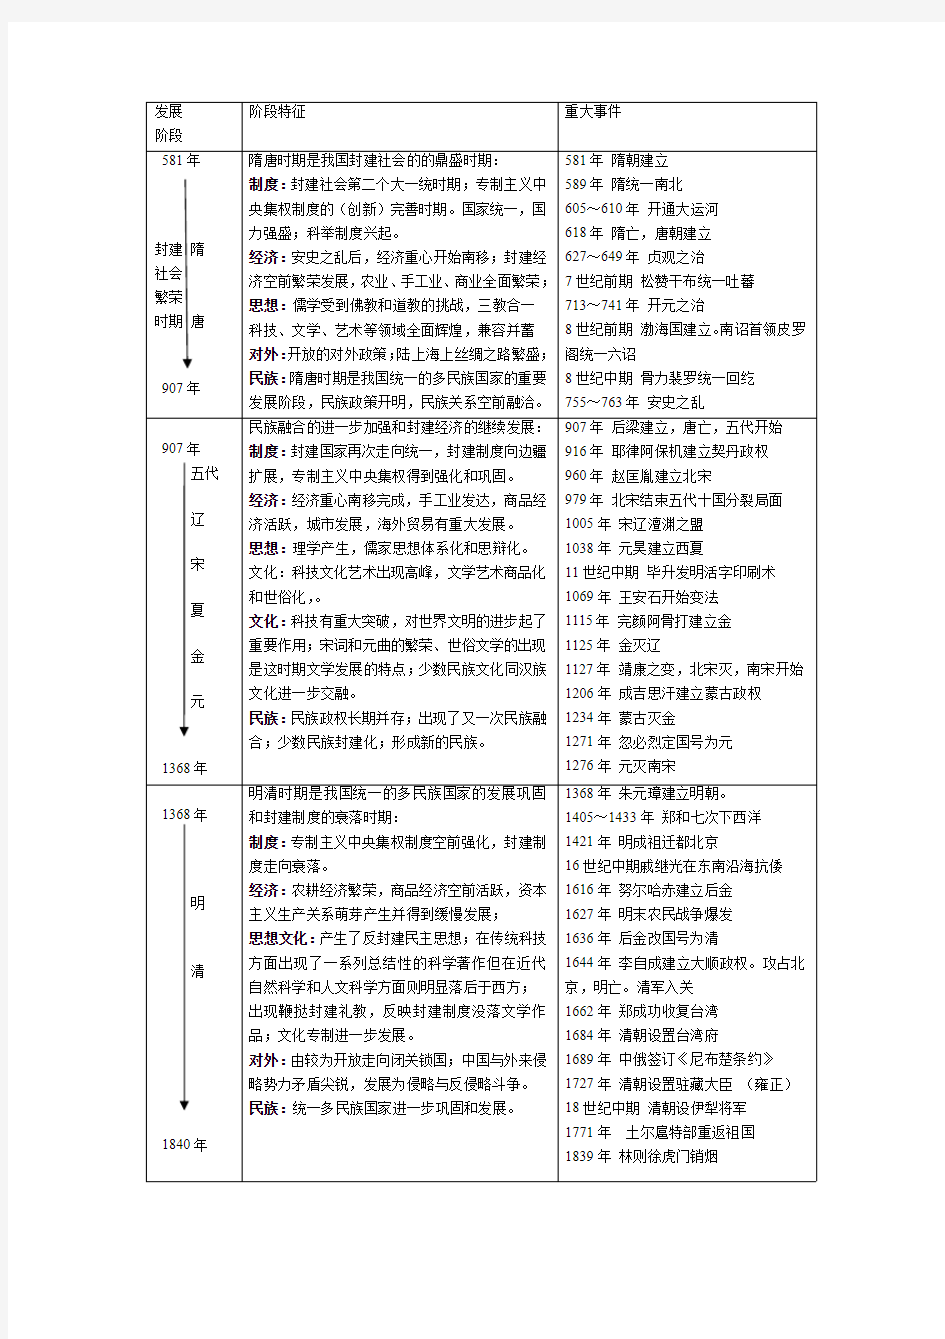 A4中国历史大事年表(整理)